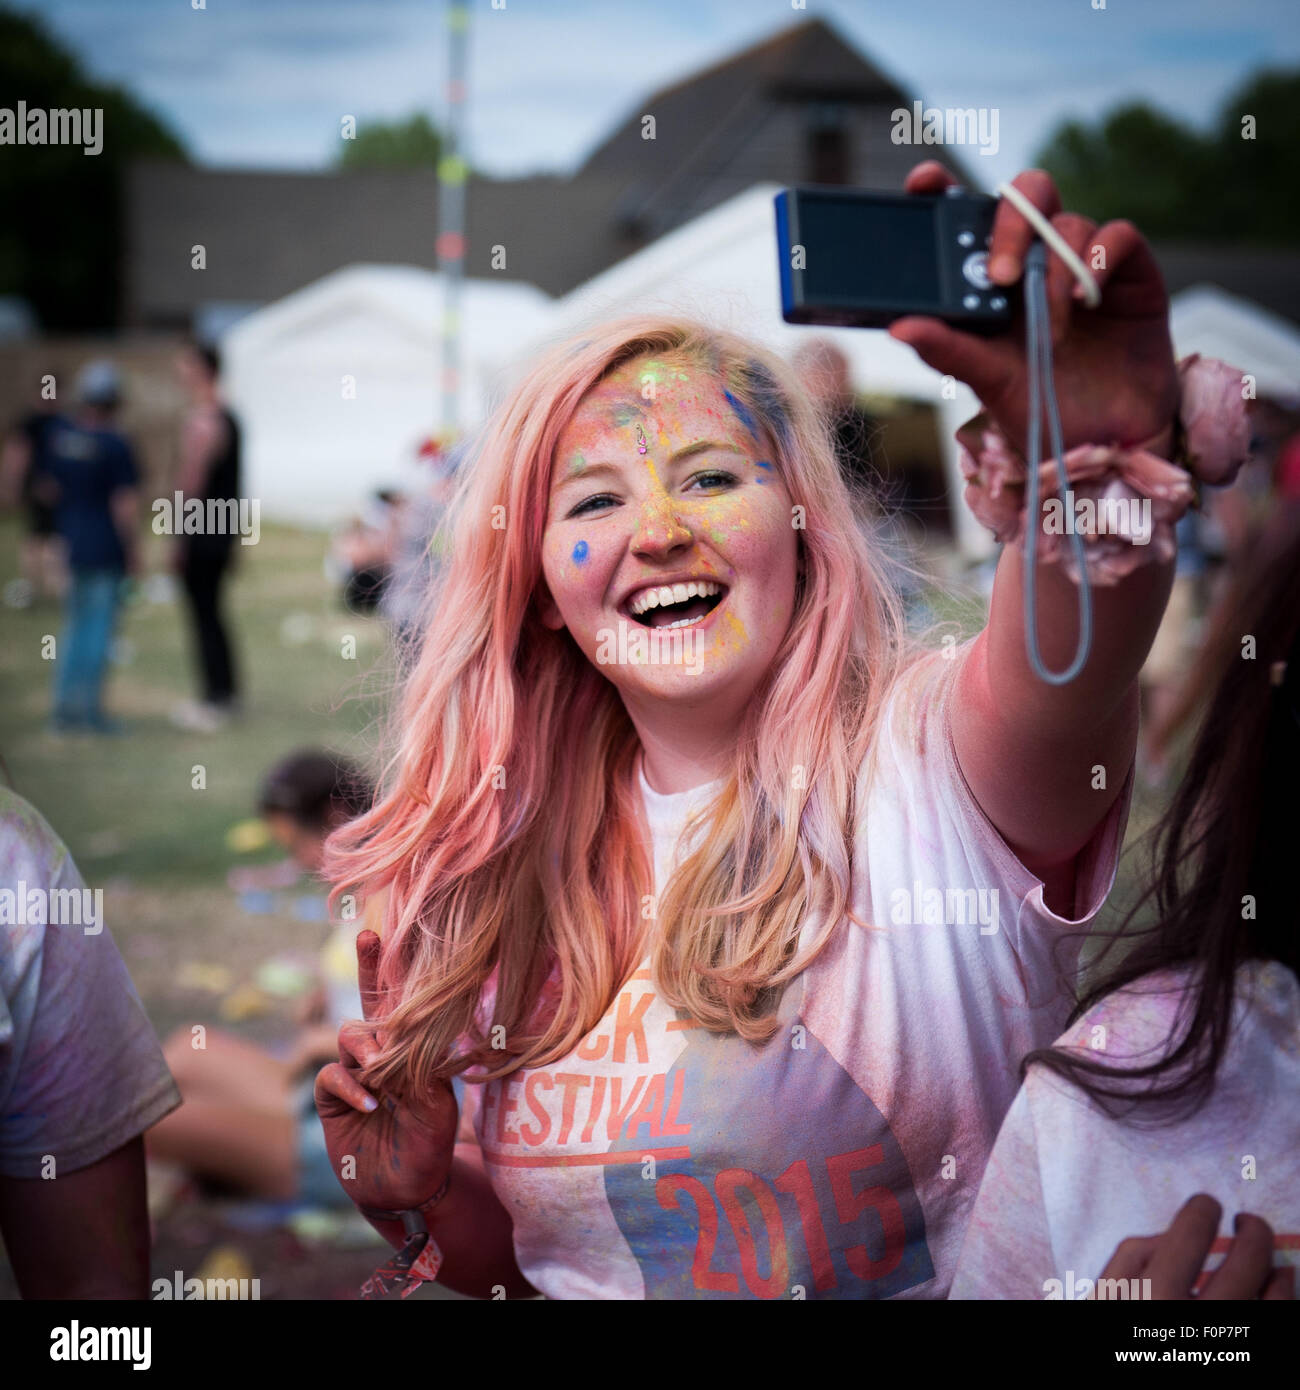 Adolescente aux cheveux roux au Truck Festival, Oxfordshire, Grande-Bretagne Banque D'Images